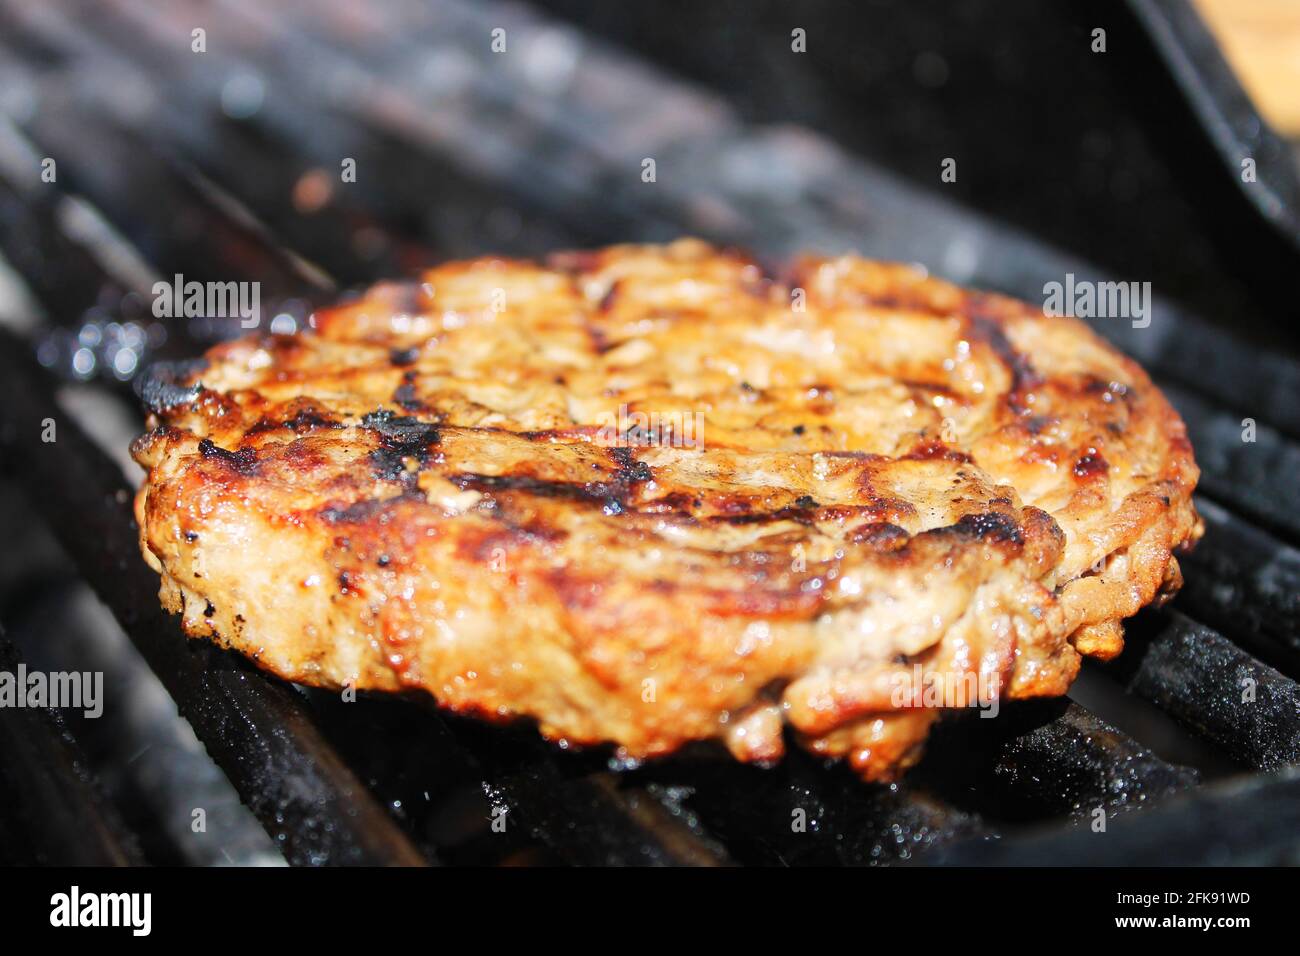 Nahaufnahme eines Hamburgerpastys beim Kochen auf einem Barbecue-Grill. Stockfoto